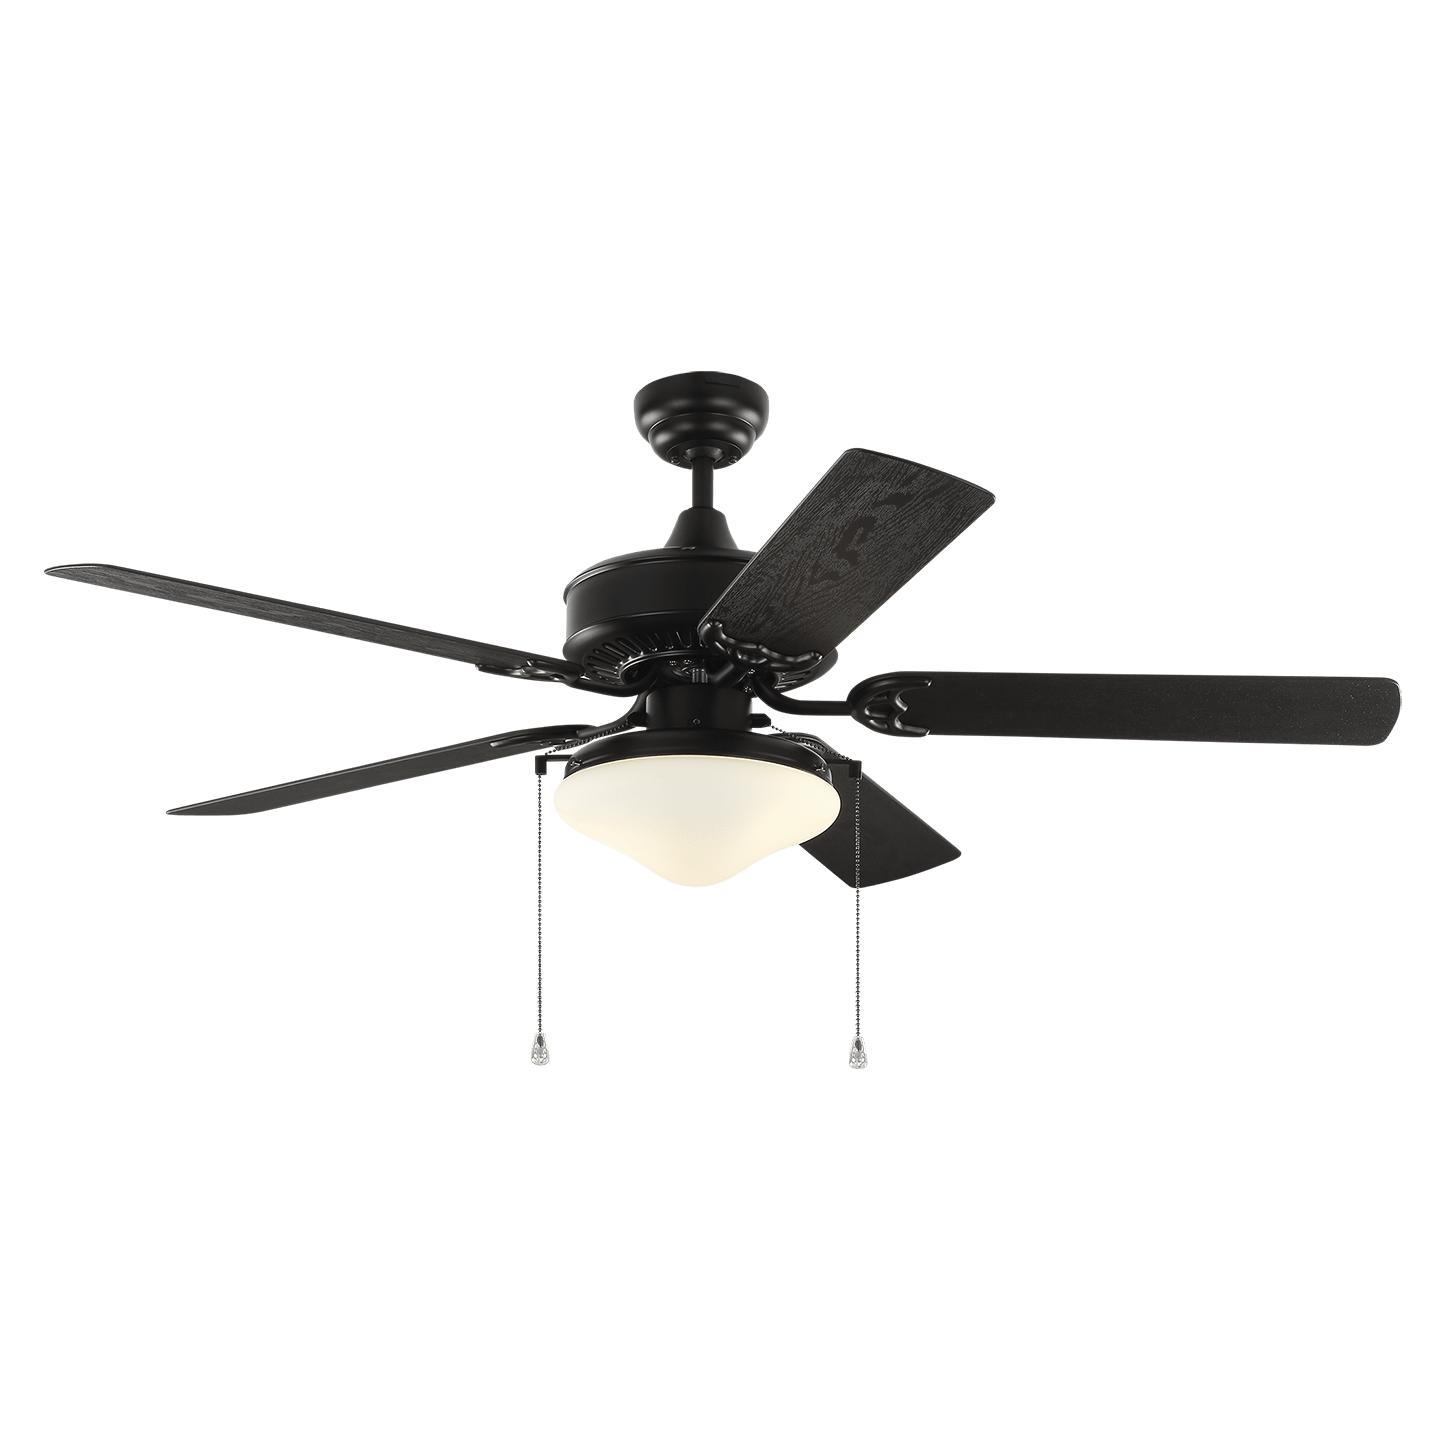 Купить Потолочный вентилятор Haven Outdoor 52" LED Ceiling Fan в интернет-магазине roooms.ru